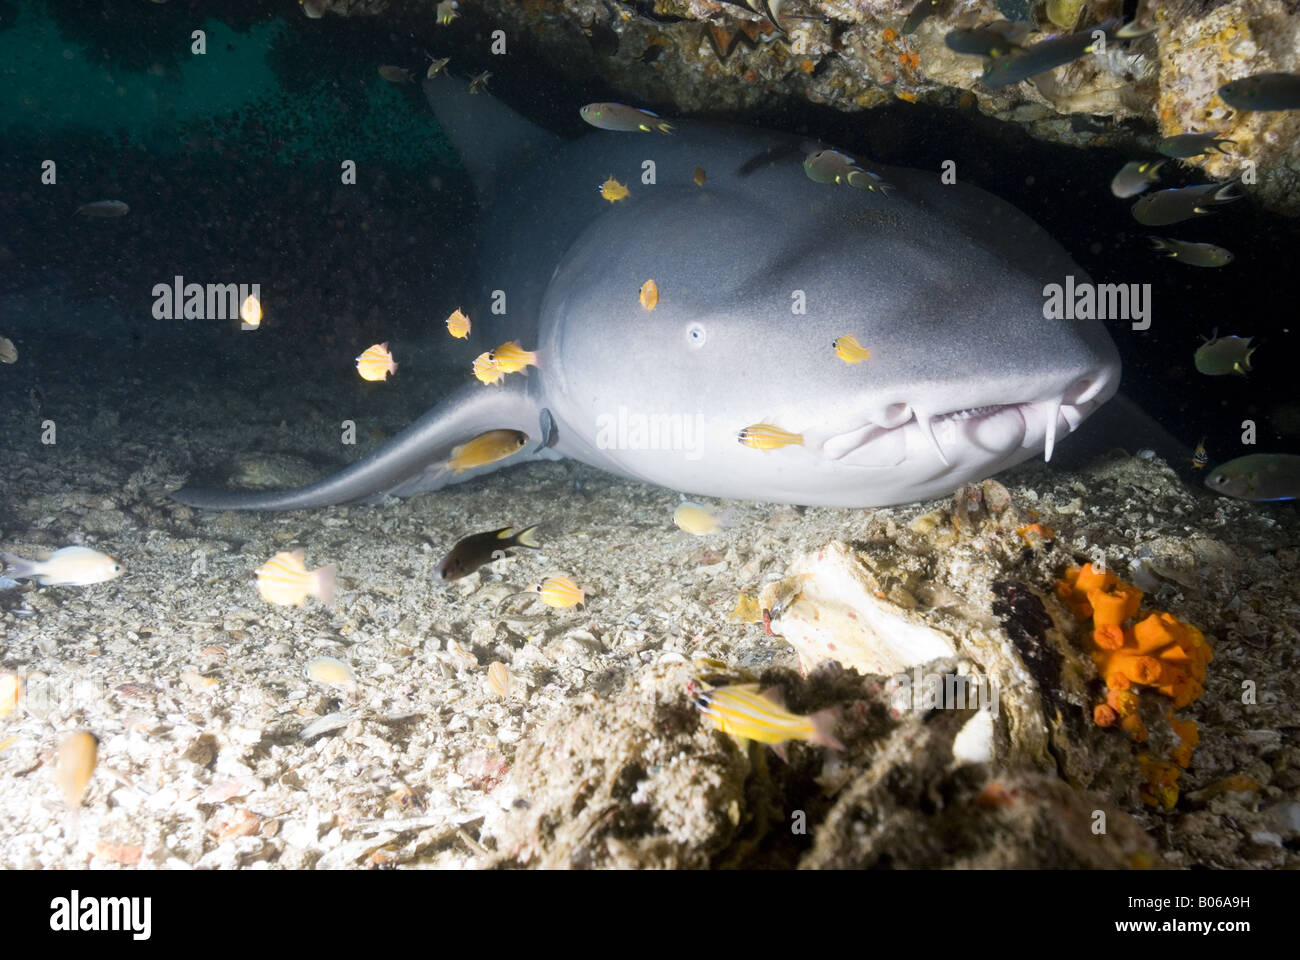 Requin nourrice gisant dans une grotte sous l'eau Banque D'Images